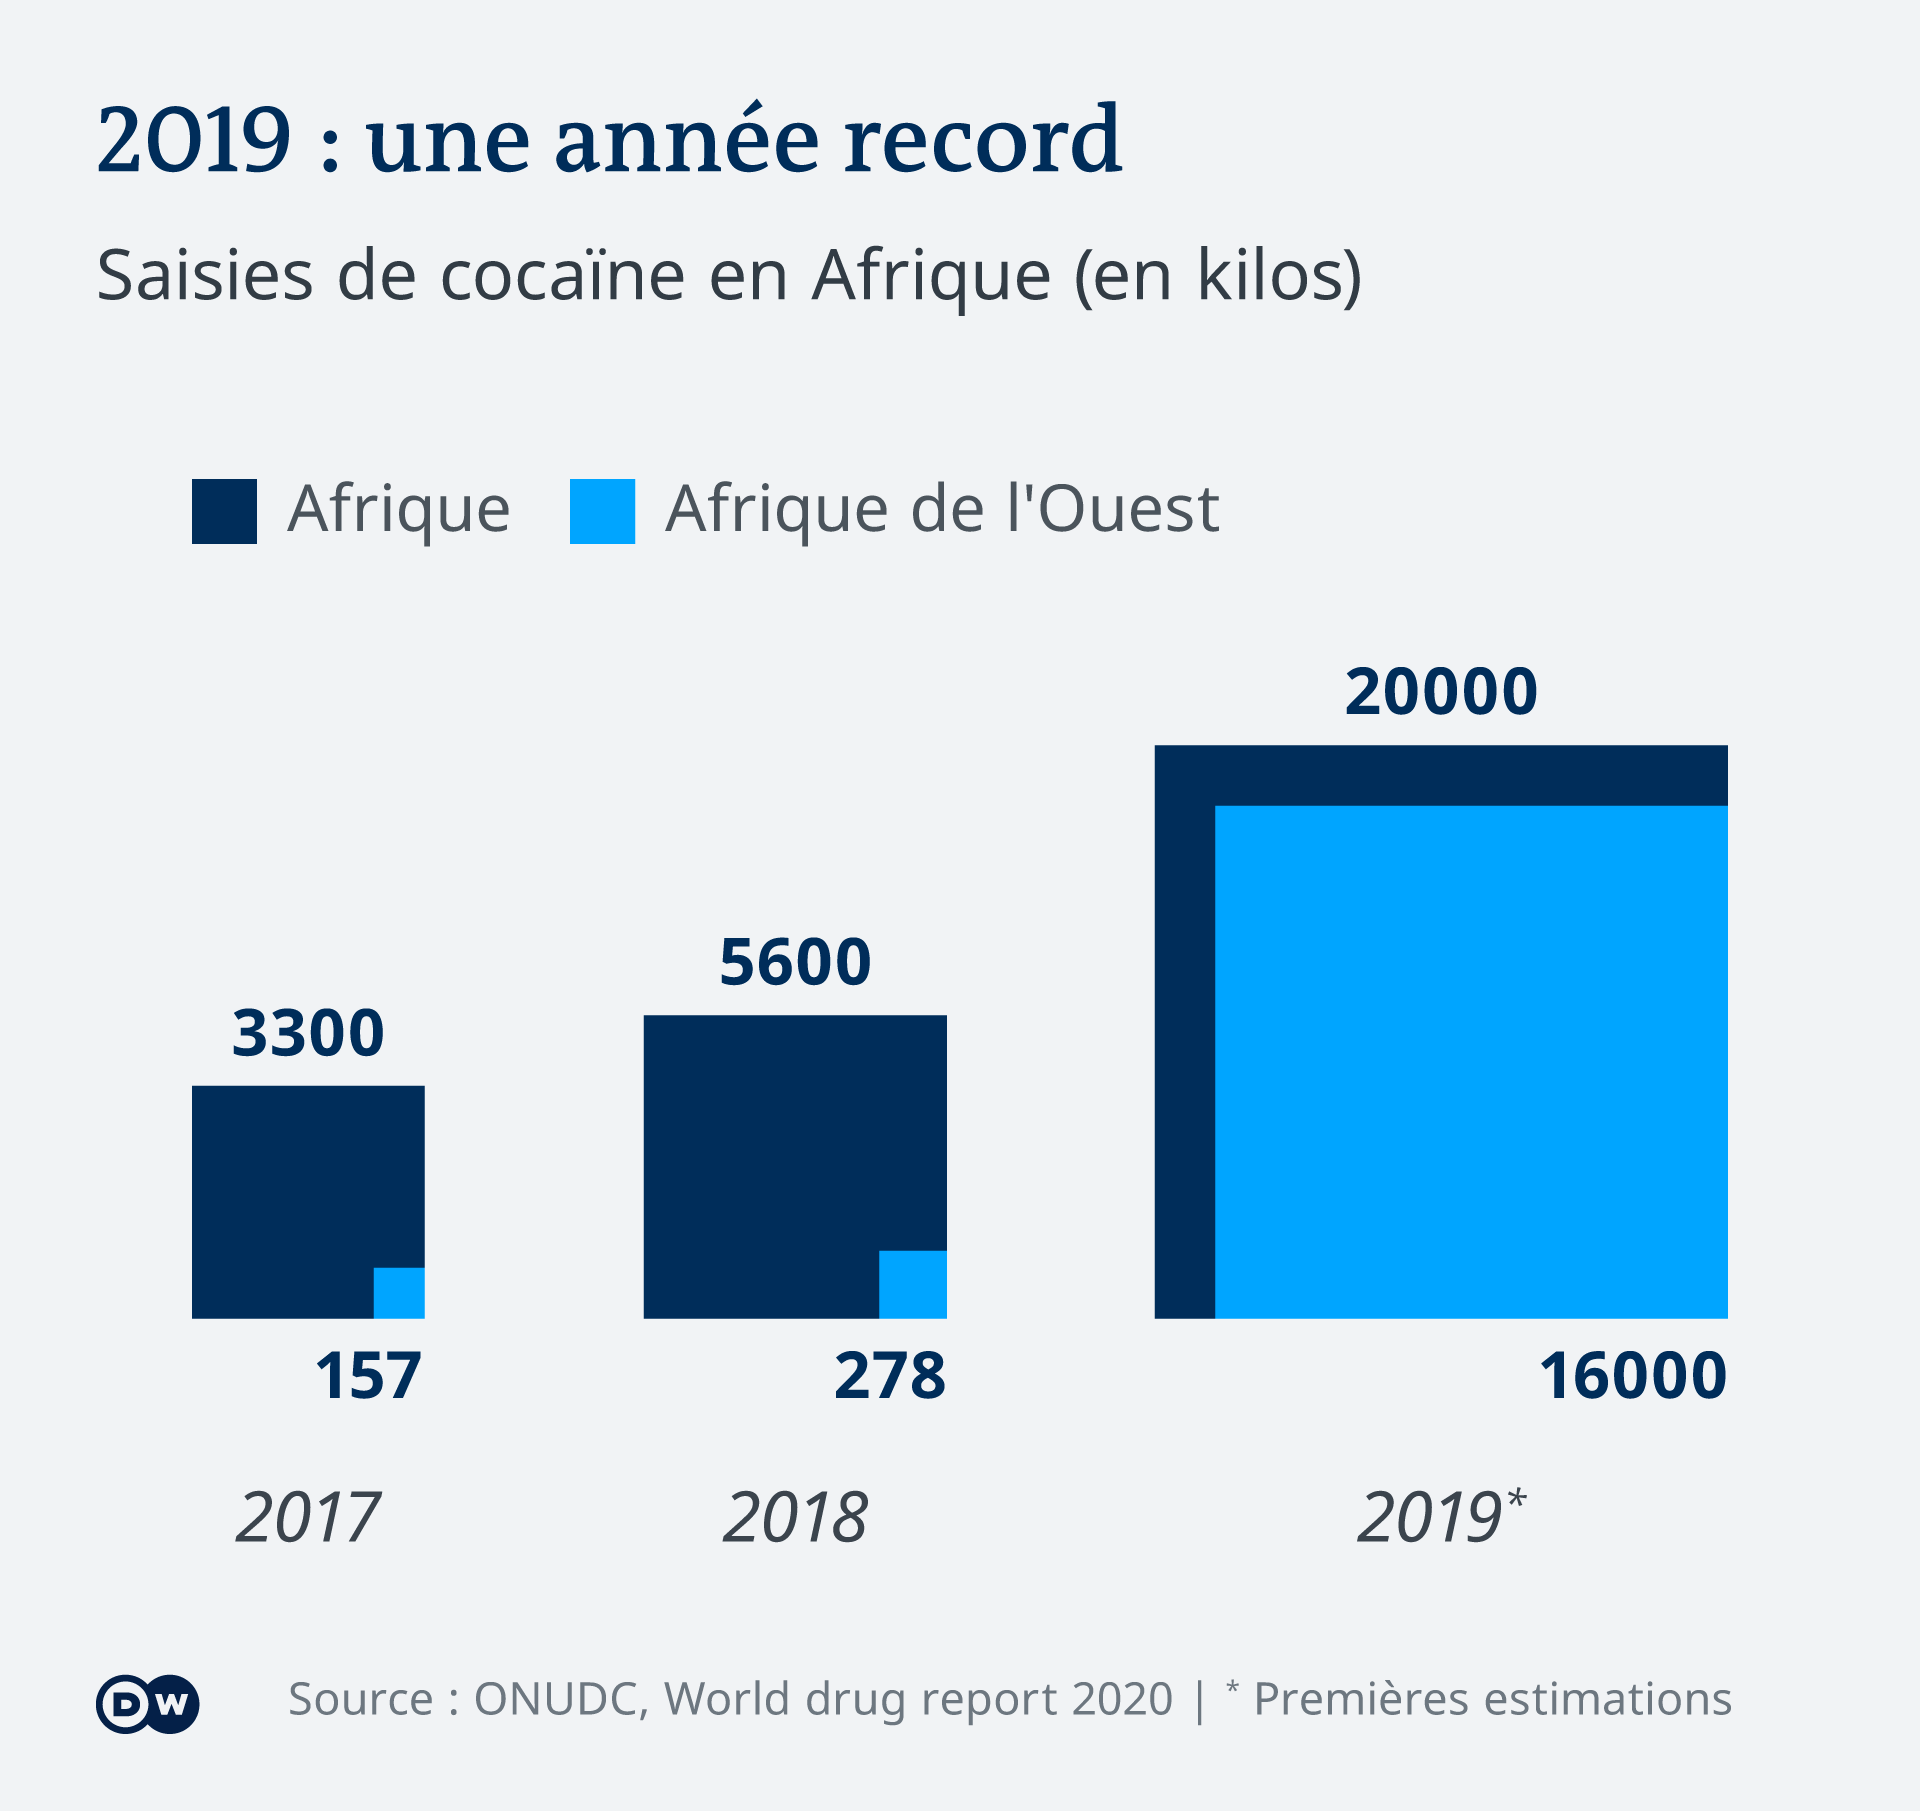 L'année 2019 a enregistré un fort redémarrage des saisies de cocaïne en Afrique.